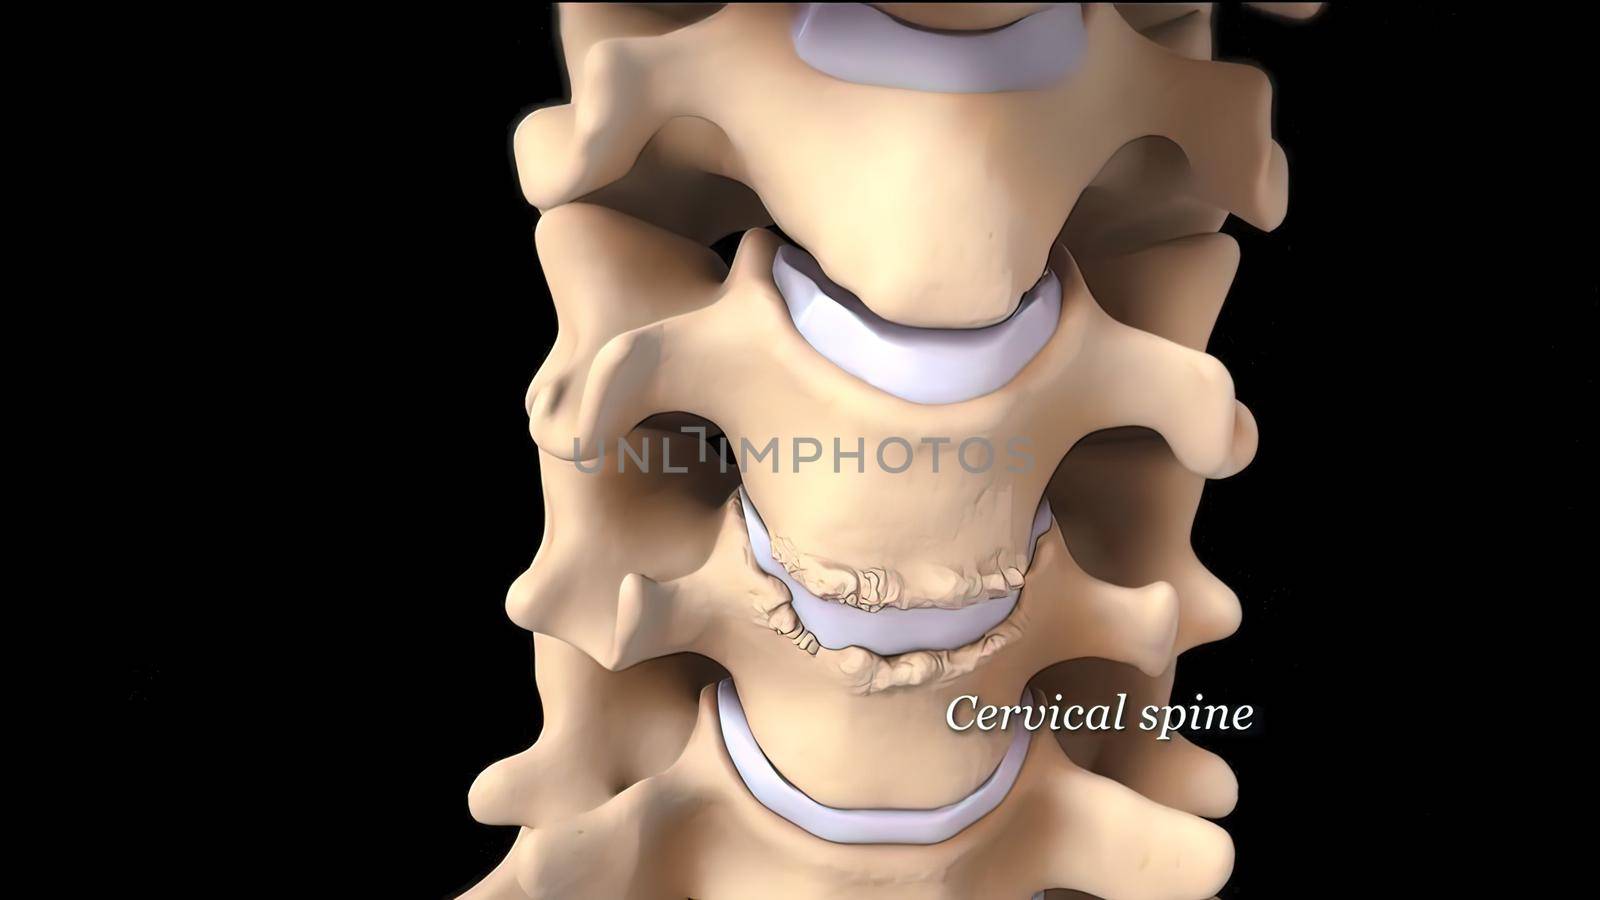 3D medical illustration of cervical spine on black background by creativepic